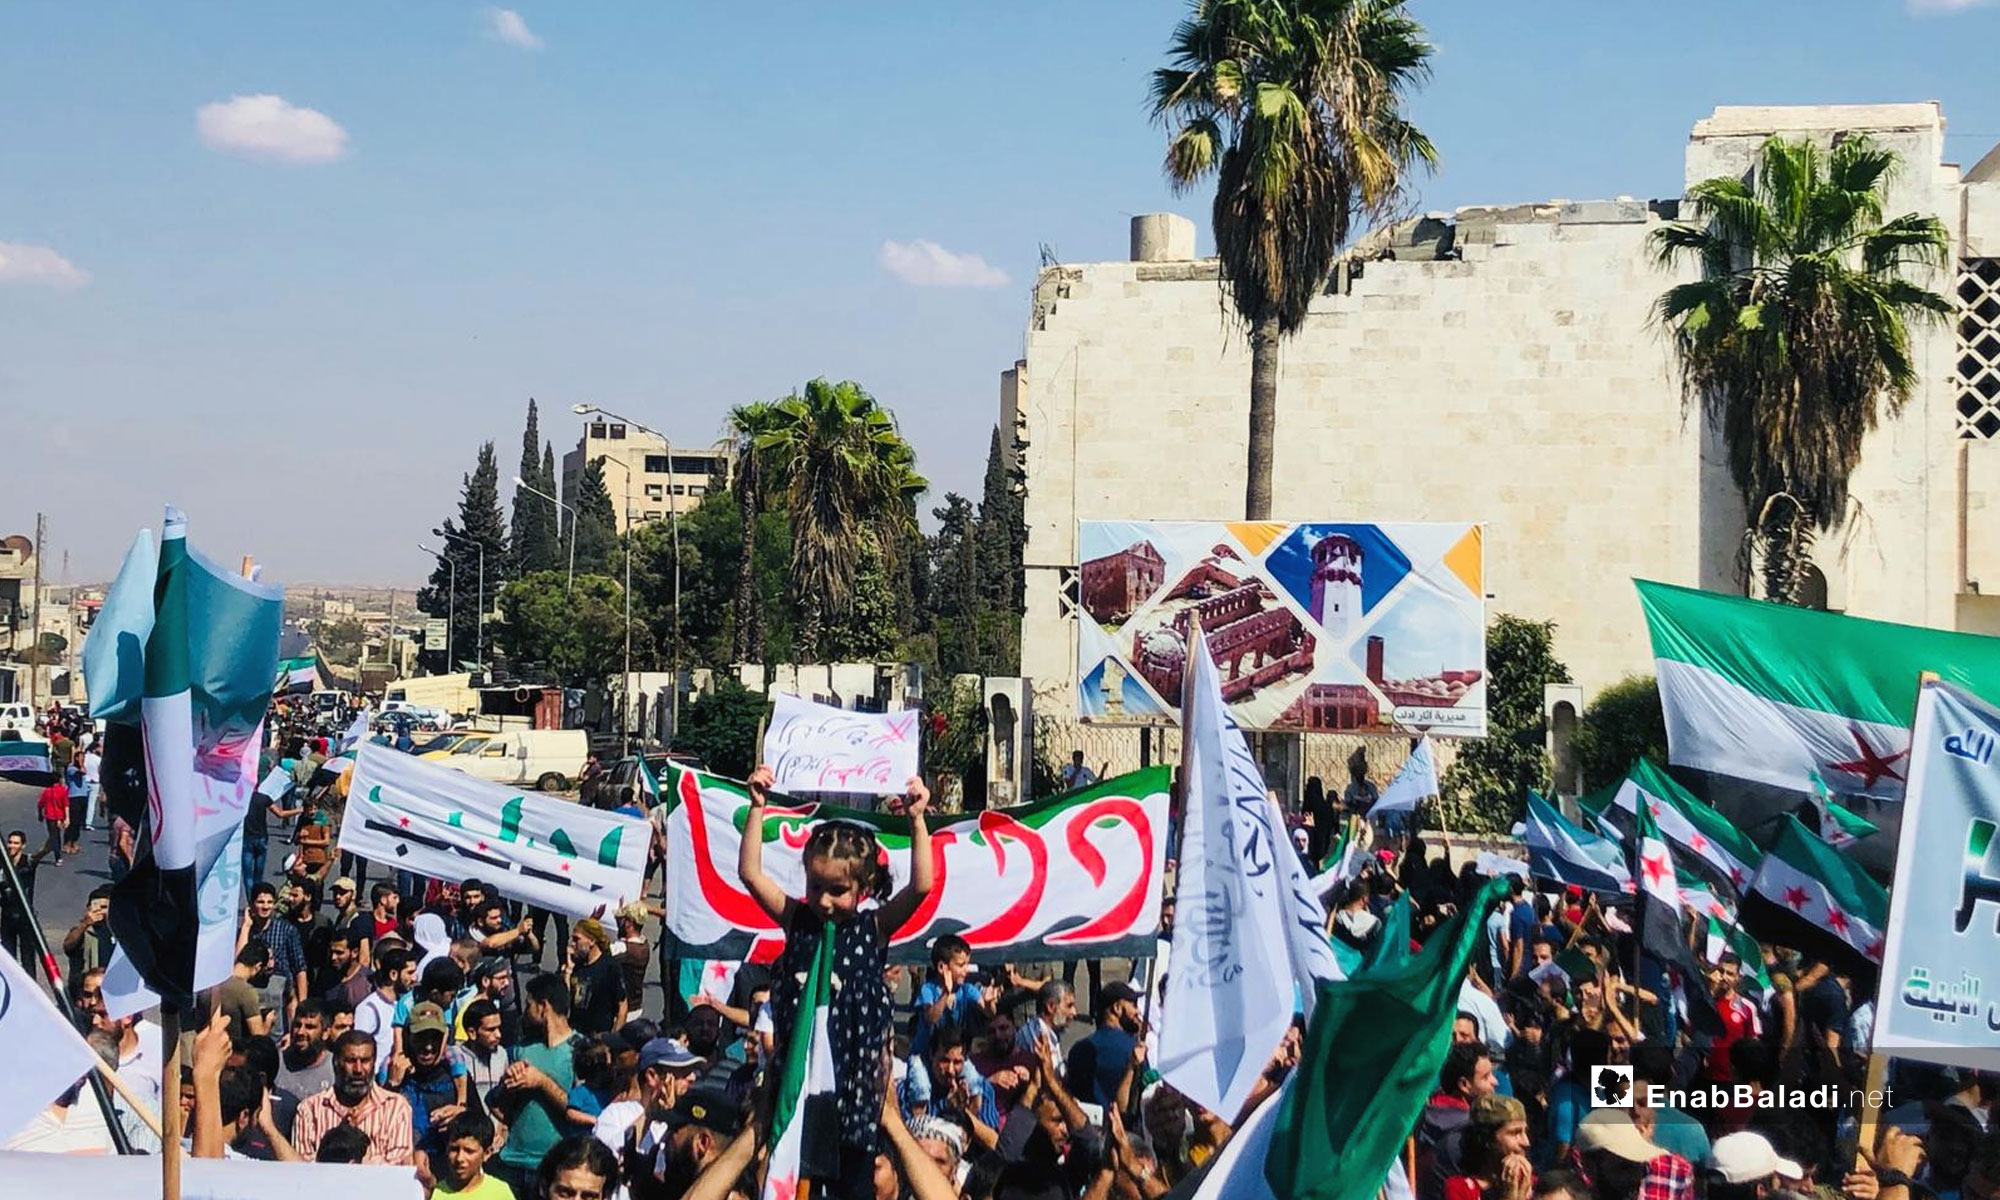 مظاهرات تطالب بتجديد الثورة والإفراج عن المعتقلين في مدينة إدلب  - 21 من أيلول 2018 (عنب بلدي)